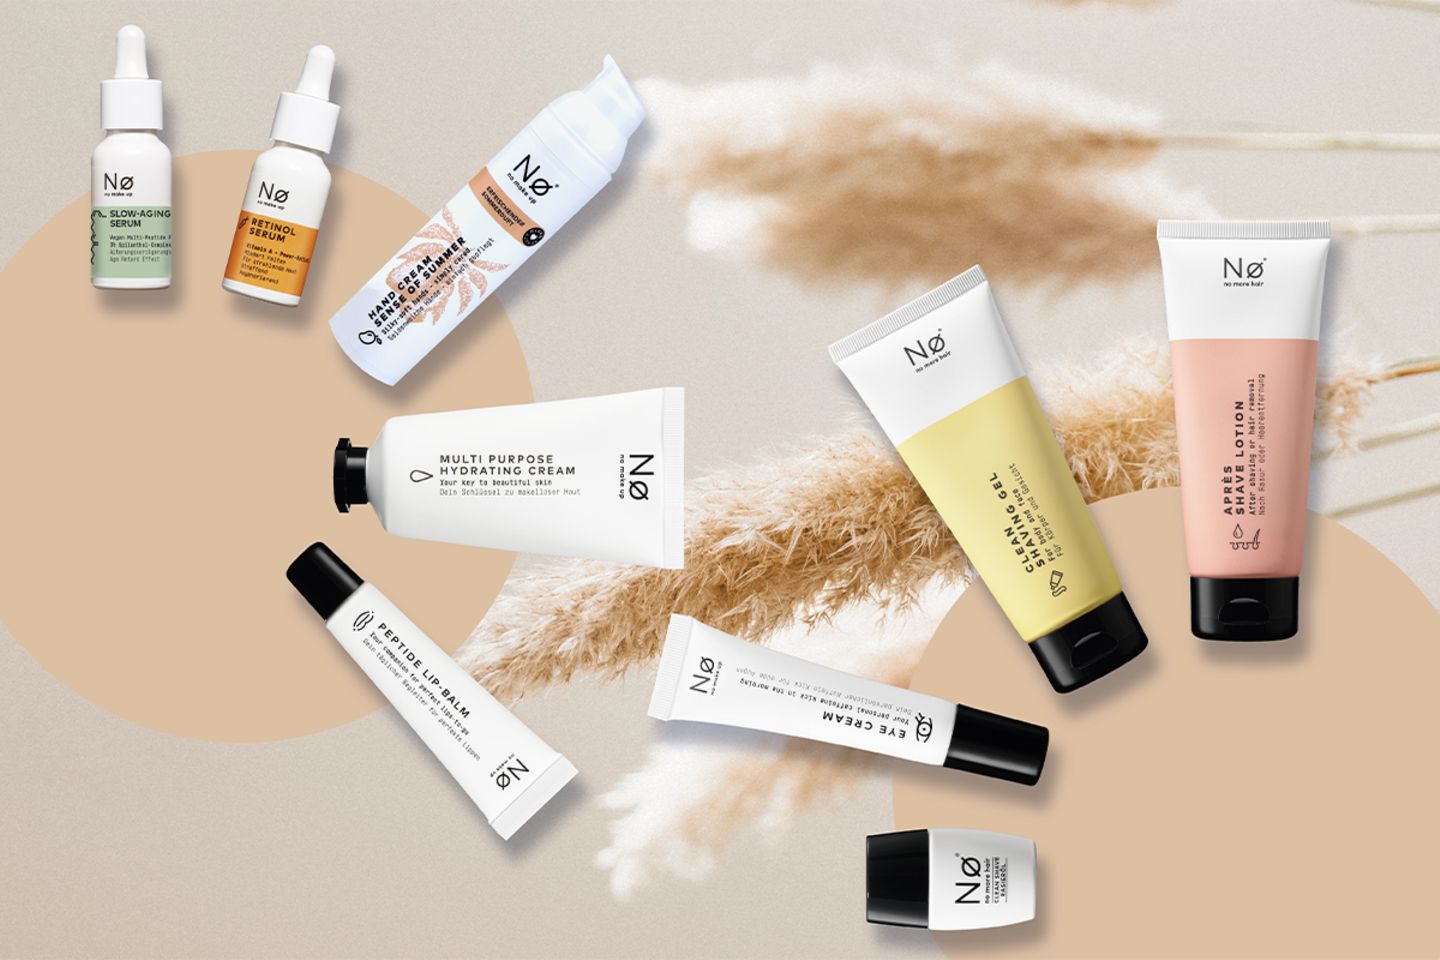 Gewinnspiel: Drei Clean Beauty-Sets von Nø Cosmetics zu gewinnen